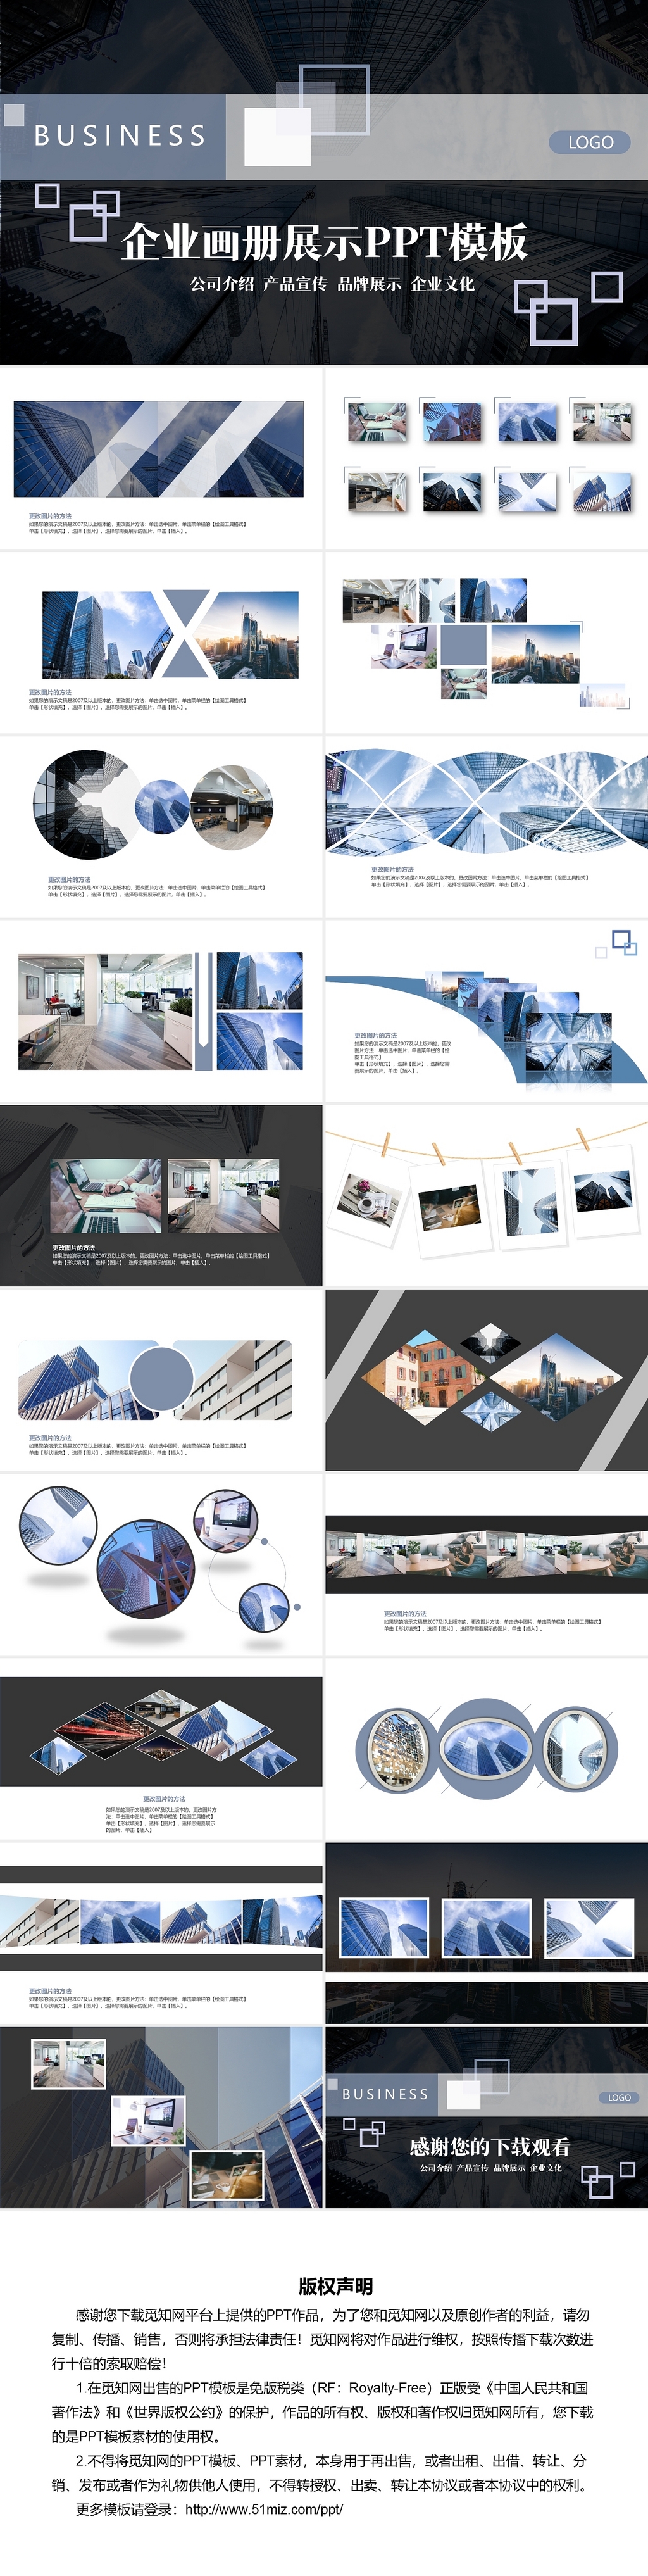 蓝色简约商务企业画册展示PPT模板